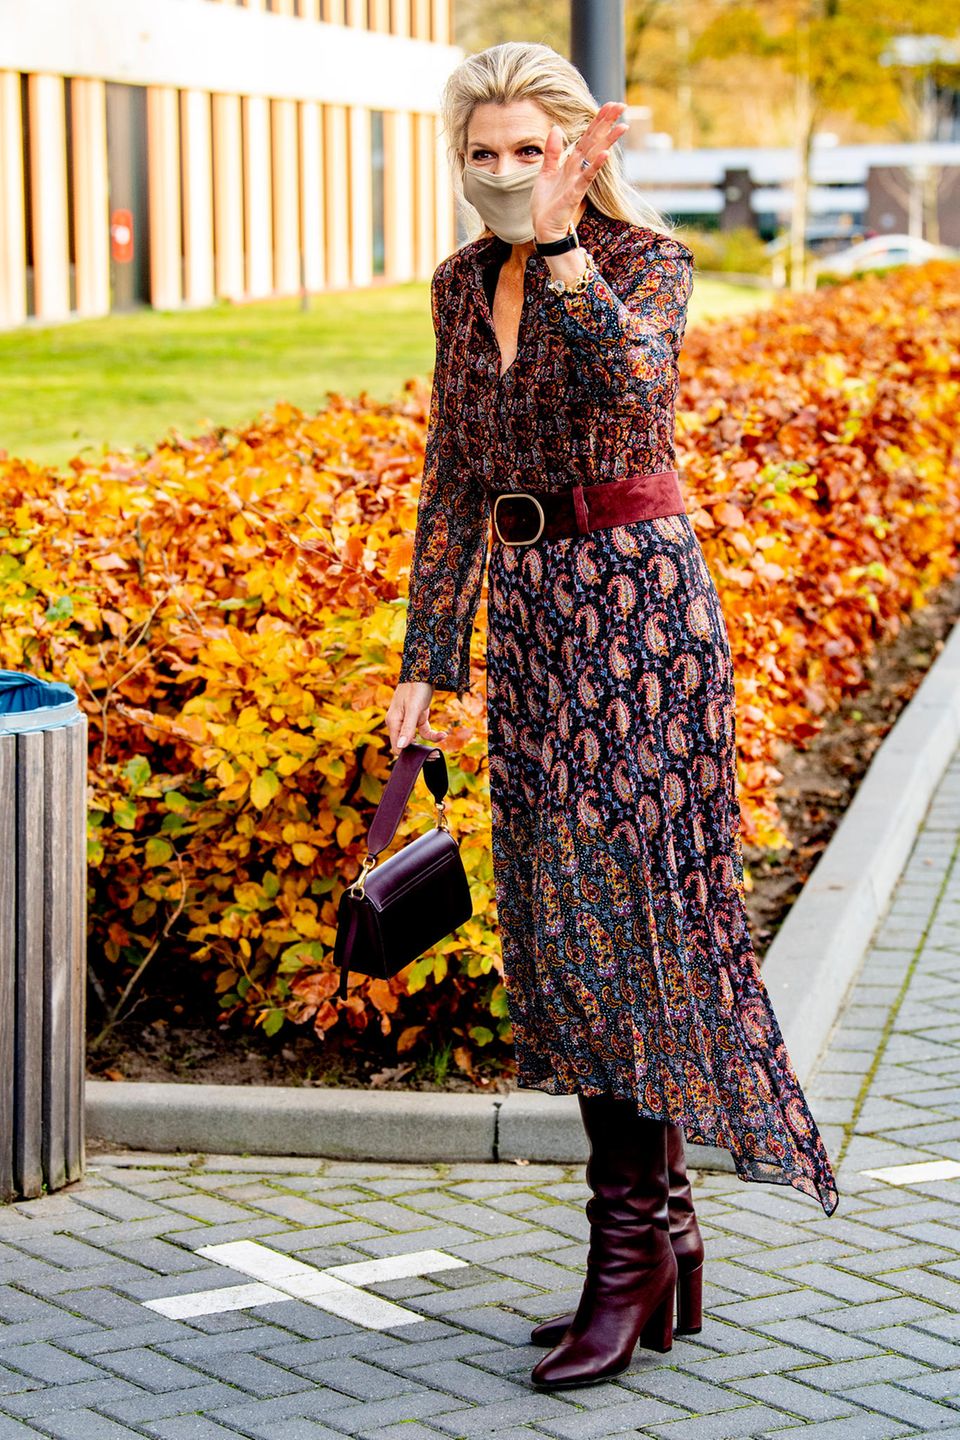 Königin Máxima zeigt sich bei dem Besuch eines Krankenhauses in einem bunten Herbstlook. Sie kombiniert ein Chiffon-Midikleid mit Paisley-Print von Altuzarra mit einer Schultertasche aus Leder von Wandler. Dazu trägt die Königin der Niederlande kniehohe Lederstiefel des italienischen Designers Gianvito Rossi.